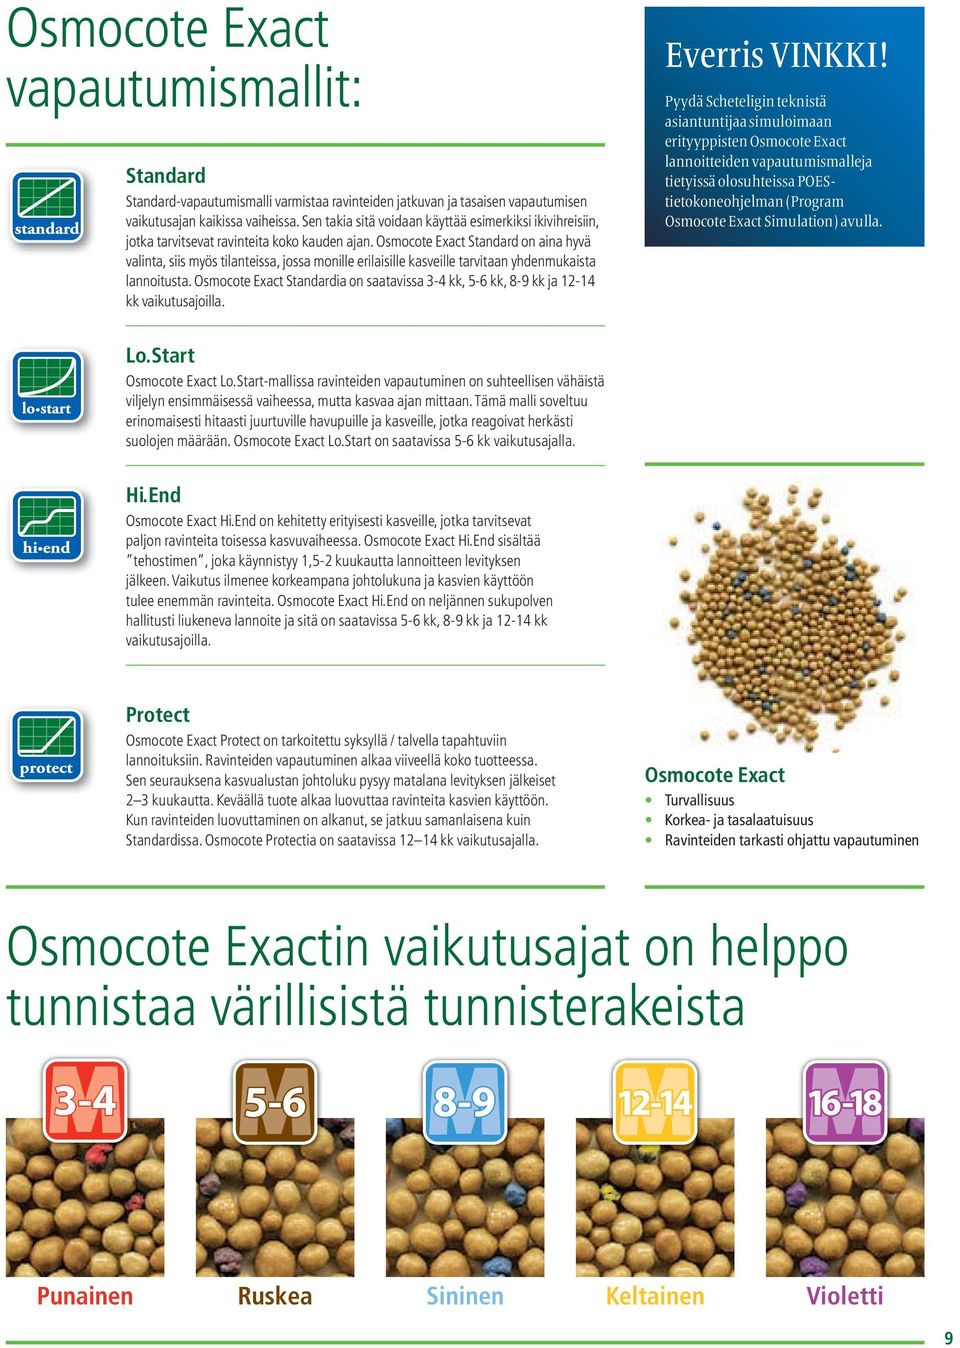 Osmocote Exact Standard on aina hyvä valinta, siis myös tilanteissa, jossa monille erilaisille kasveille tarvitaan yhdenmukaista lannoitusta.